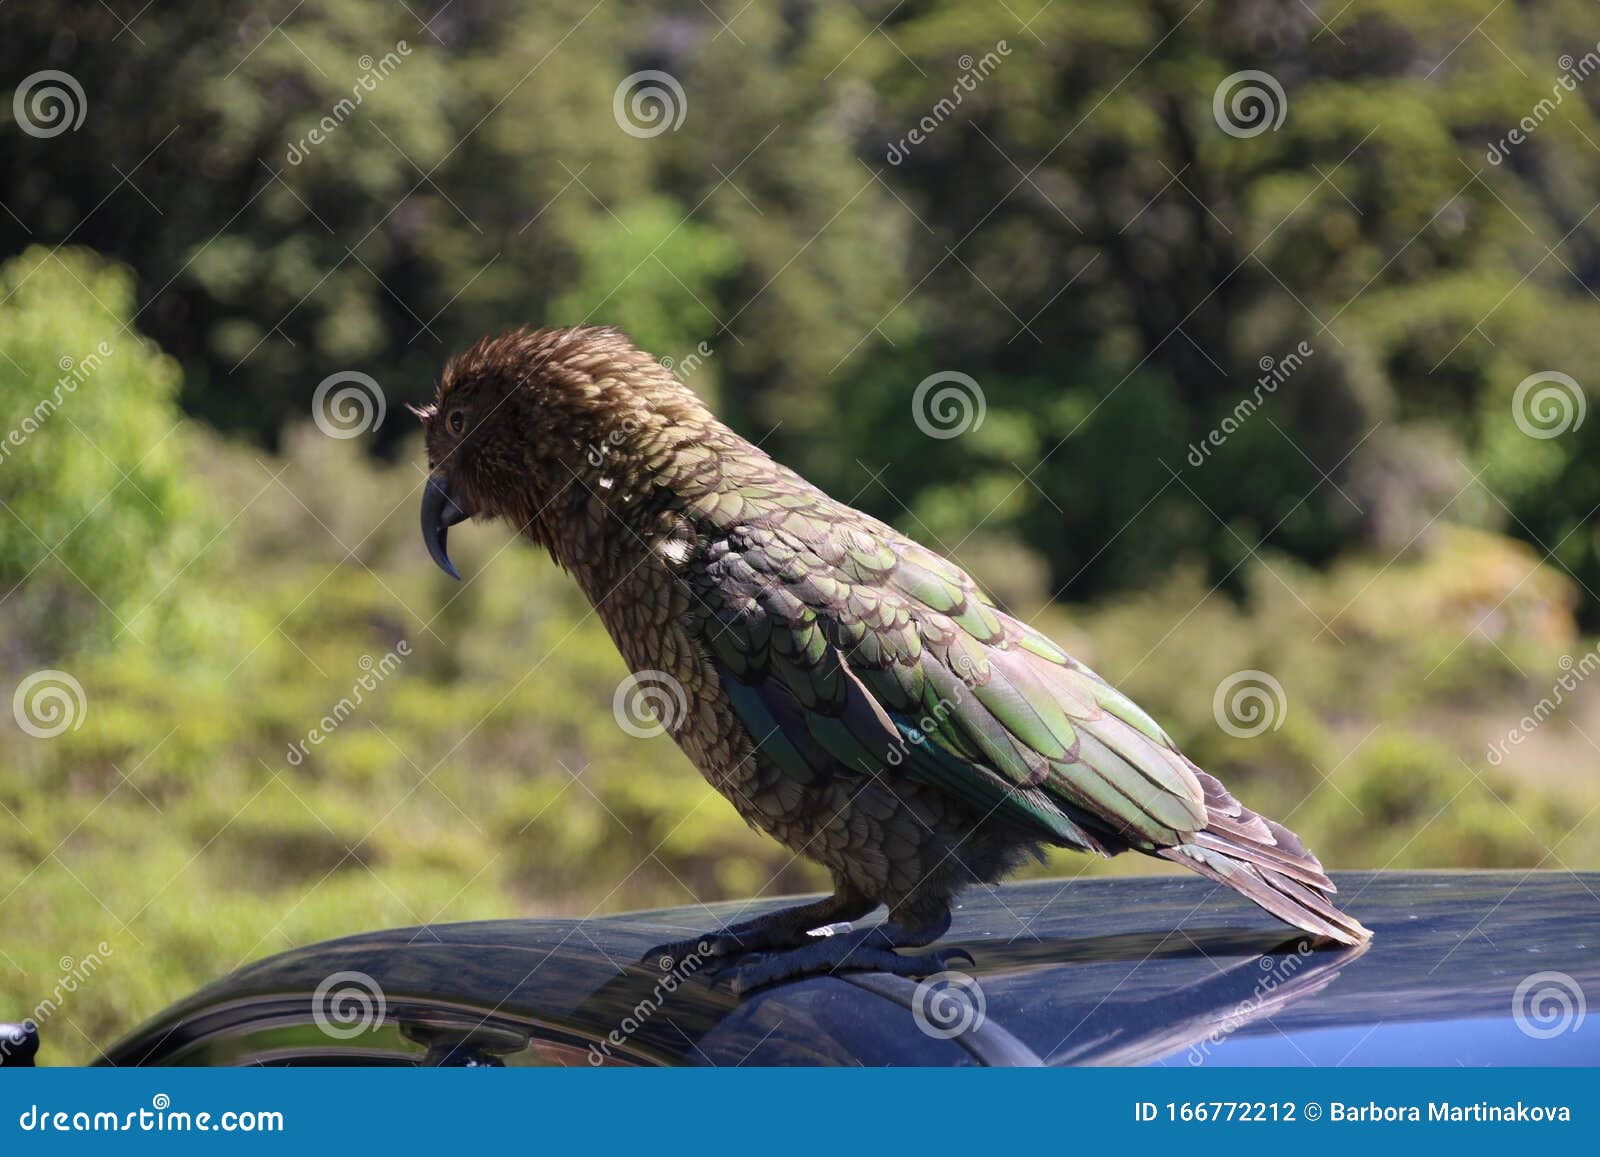 Beauty of New Zealand stock photo. Image of animal, island - 166772212